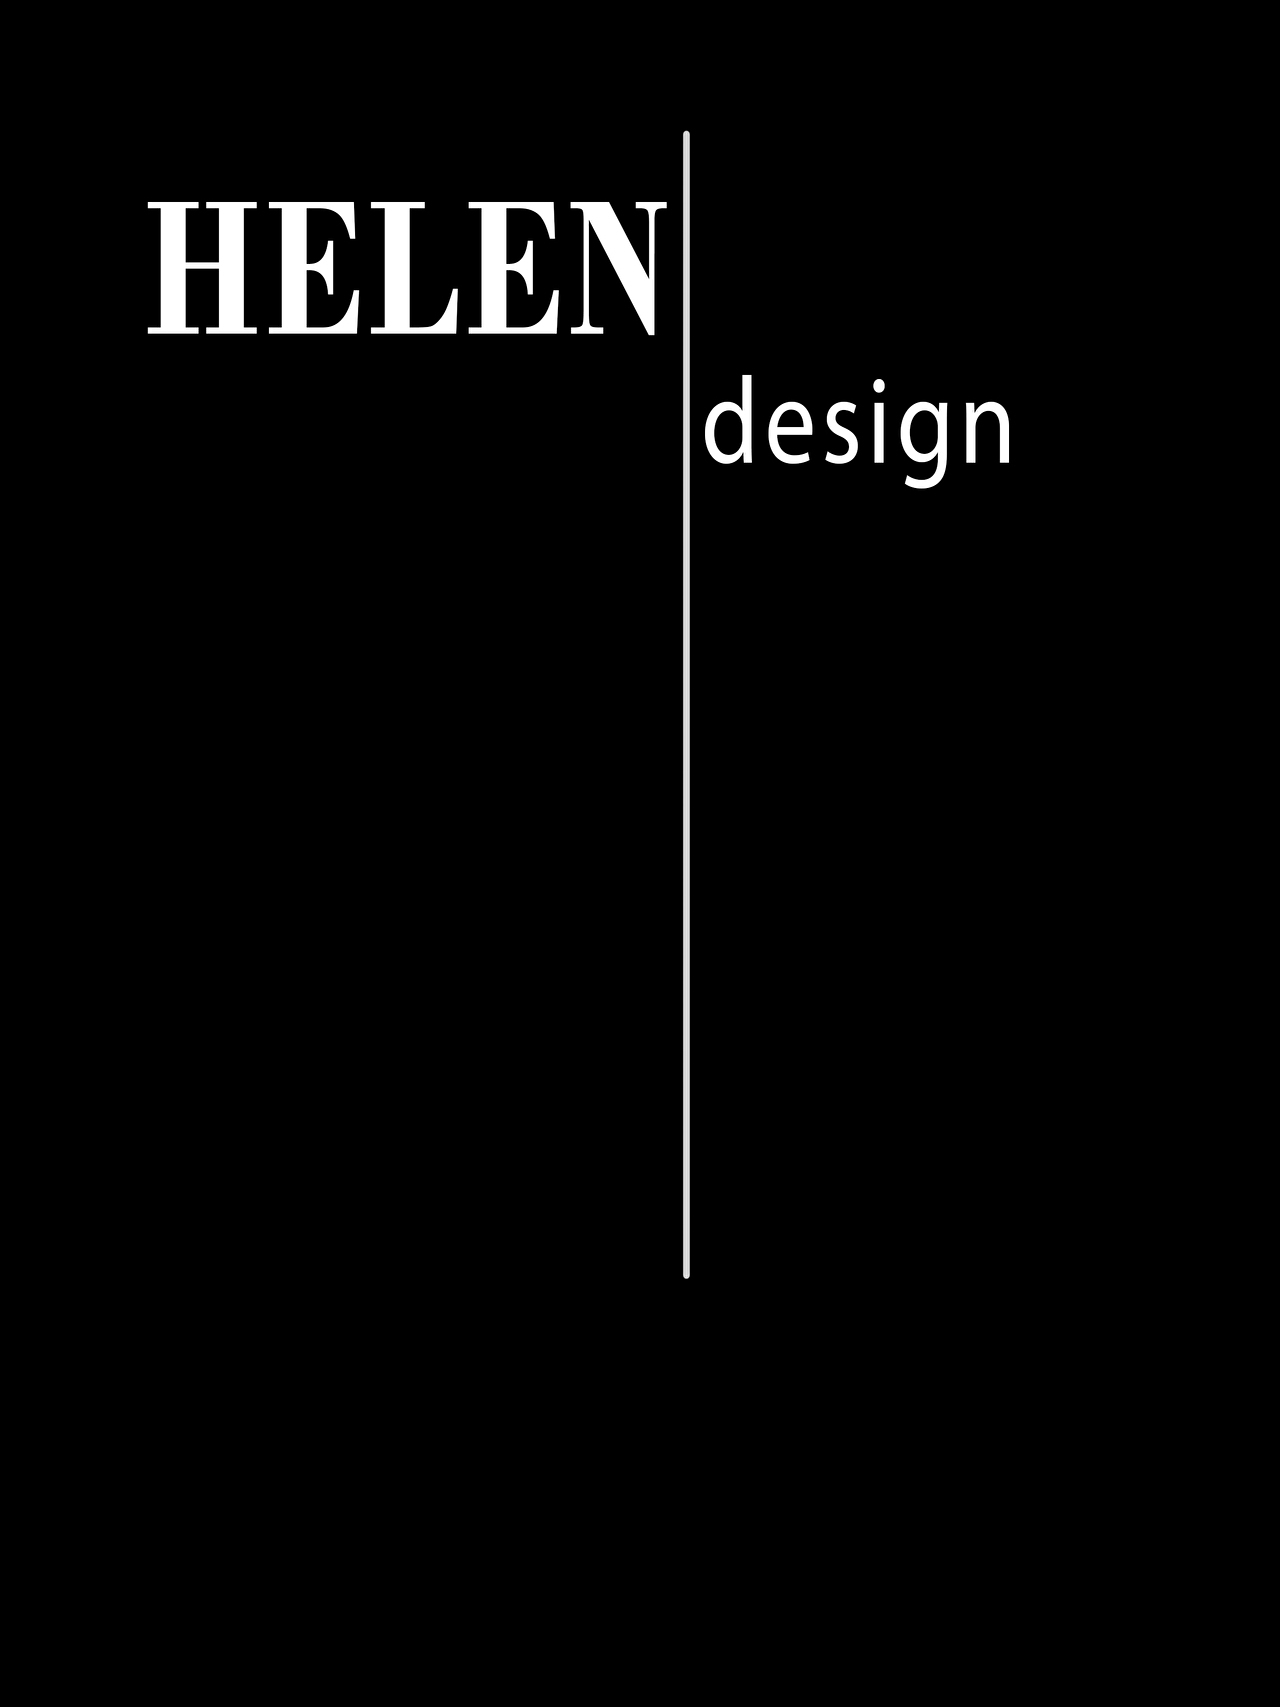 shelen_design_3.jpg